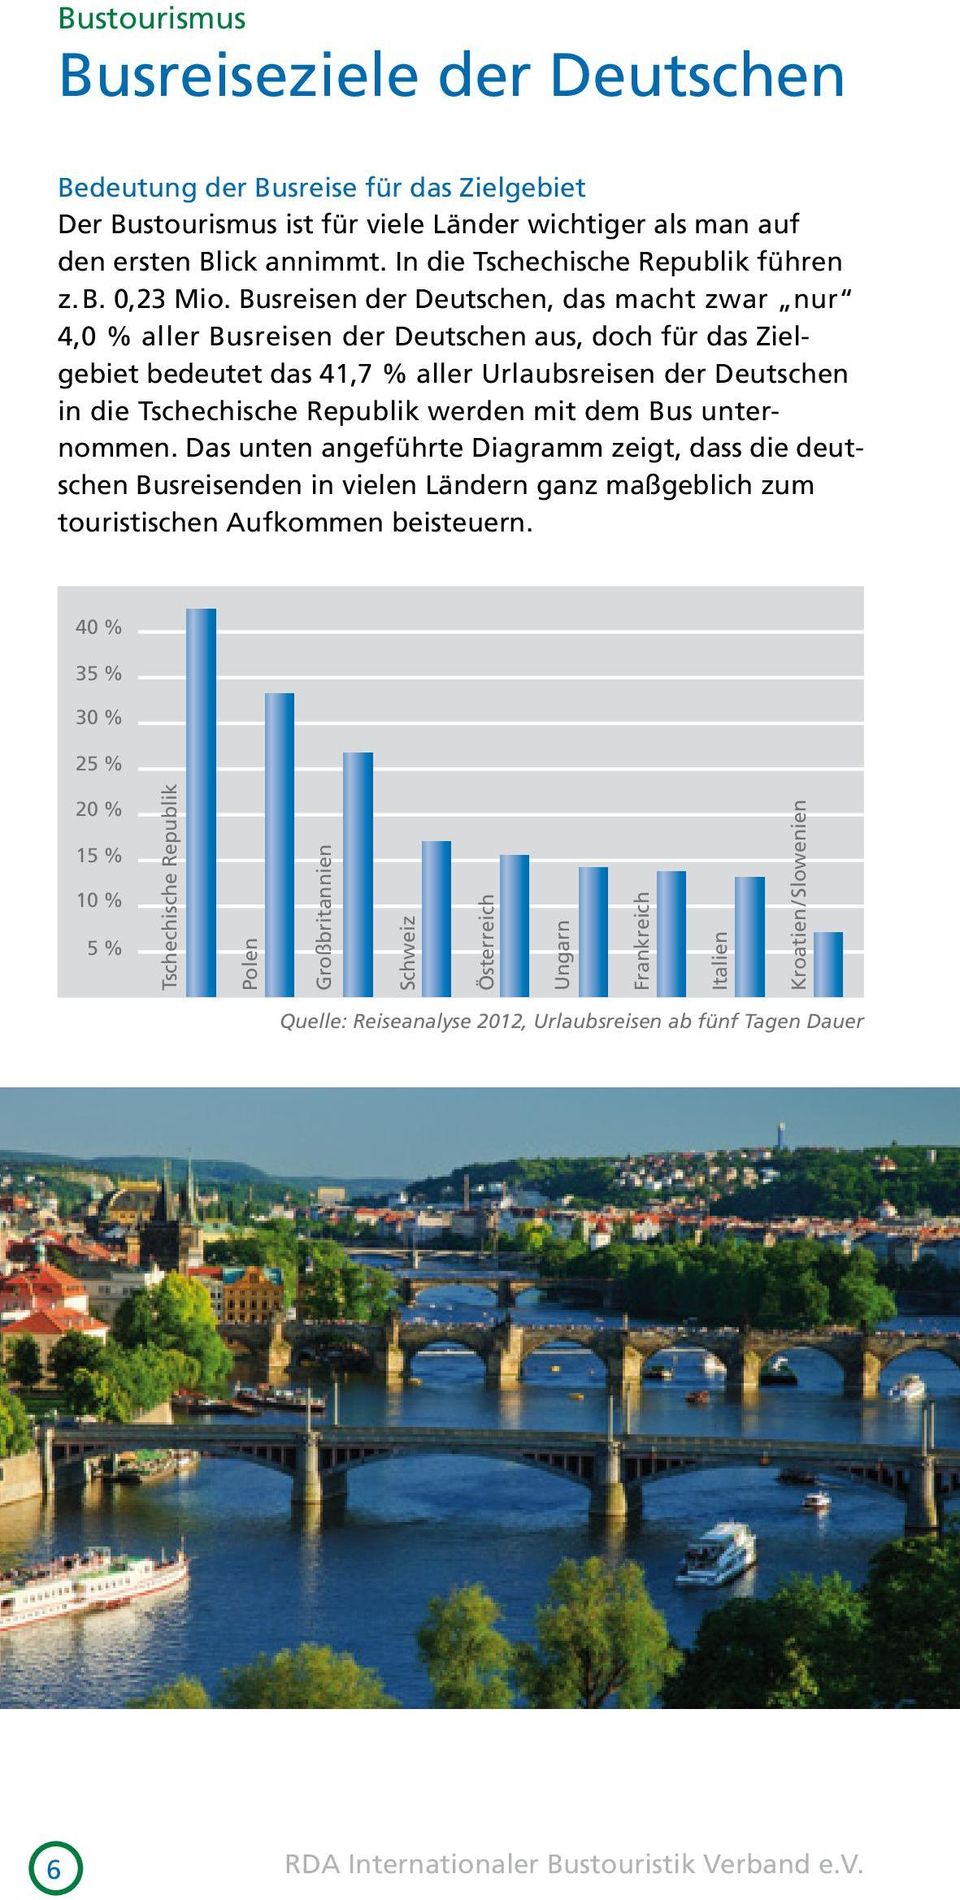 Busreisen der Deutschen, das macht zwar nur 4,0 % aller Busreisen der Deutschen aus, doch für das Zielgebiet bedeutet das 41,7 % aller Urlaubsreisen der Deutschen in die Tschechische Republik werden